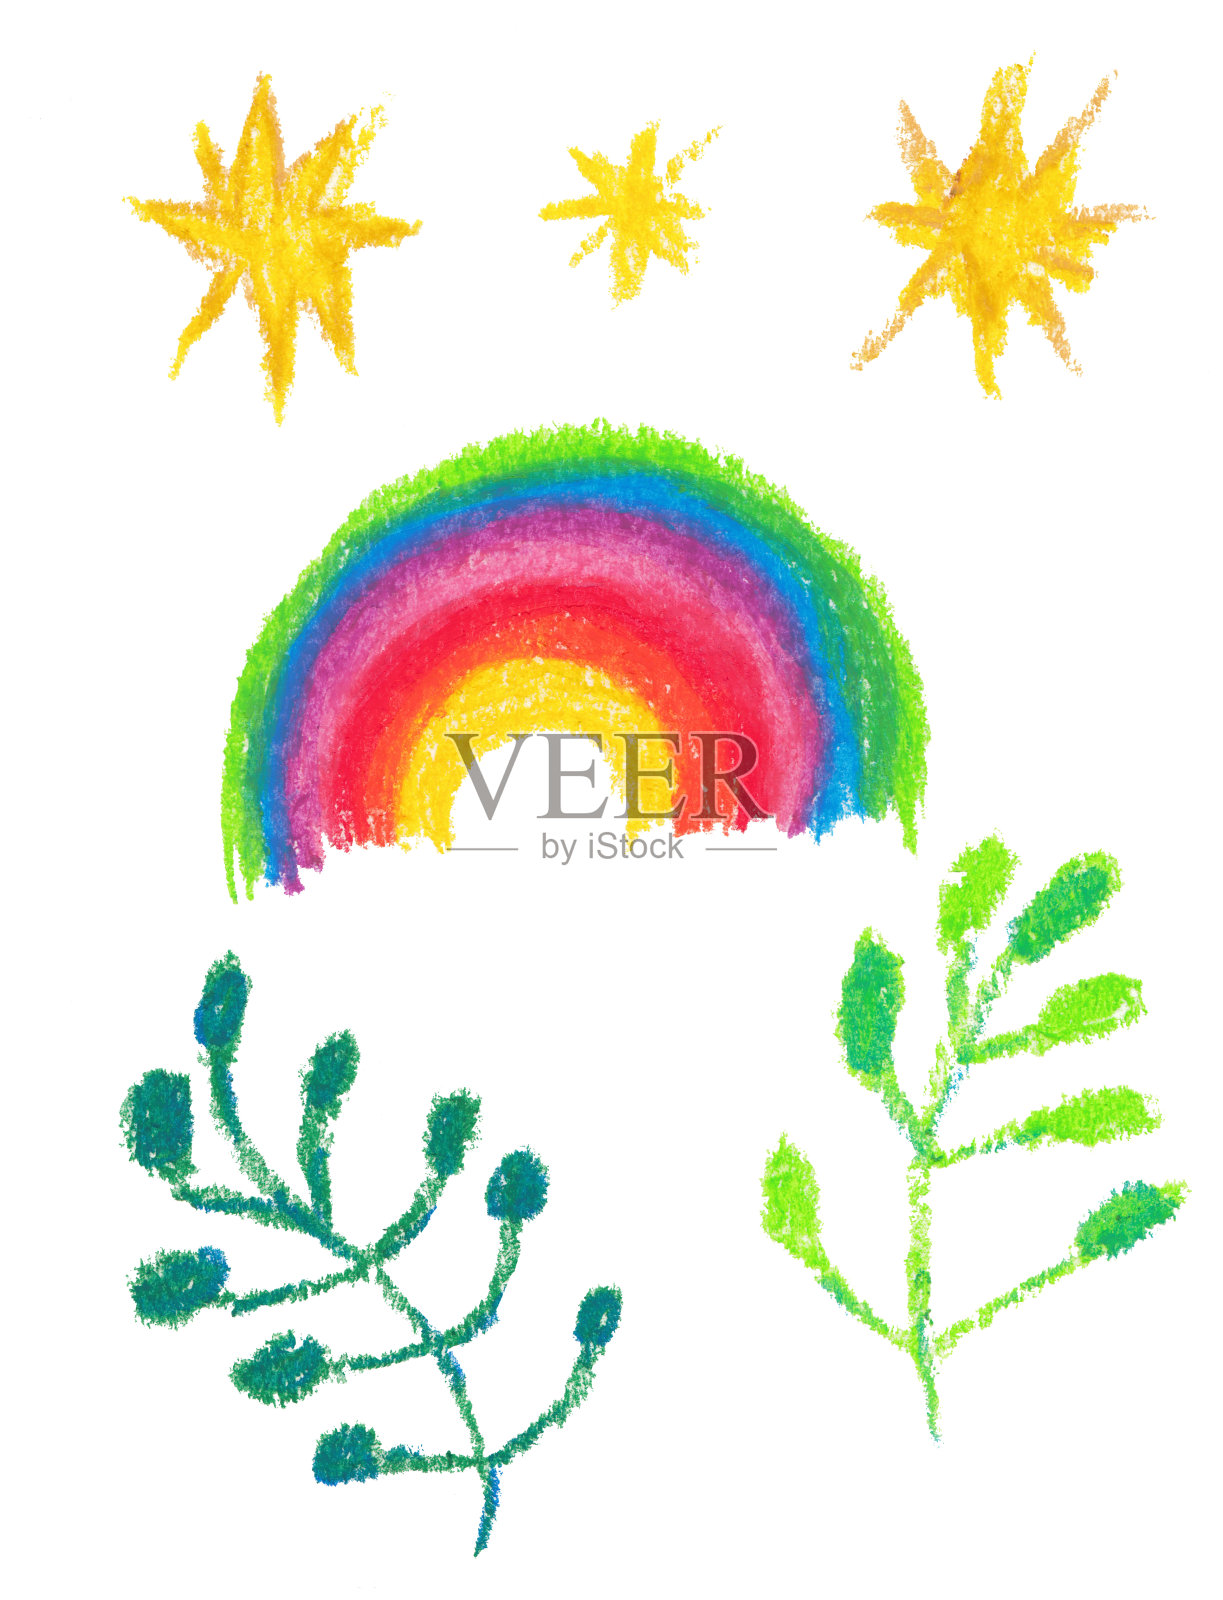 色彩鲜艳的图案，风格优美。植物学绘画。插画图片素材